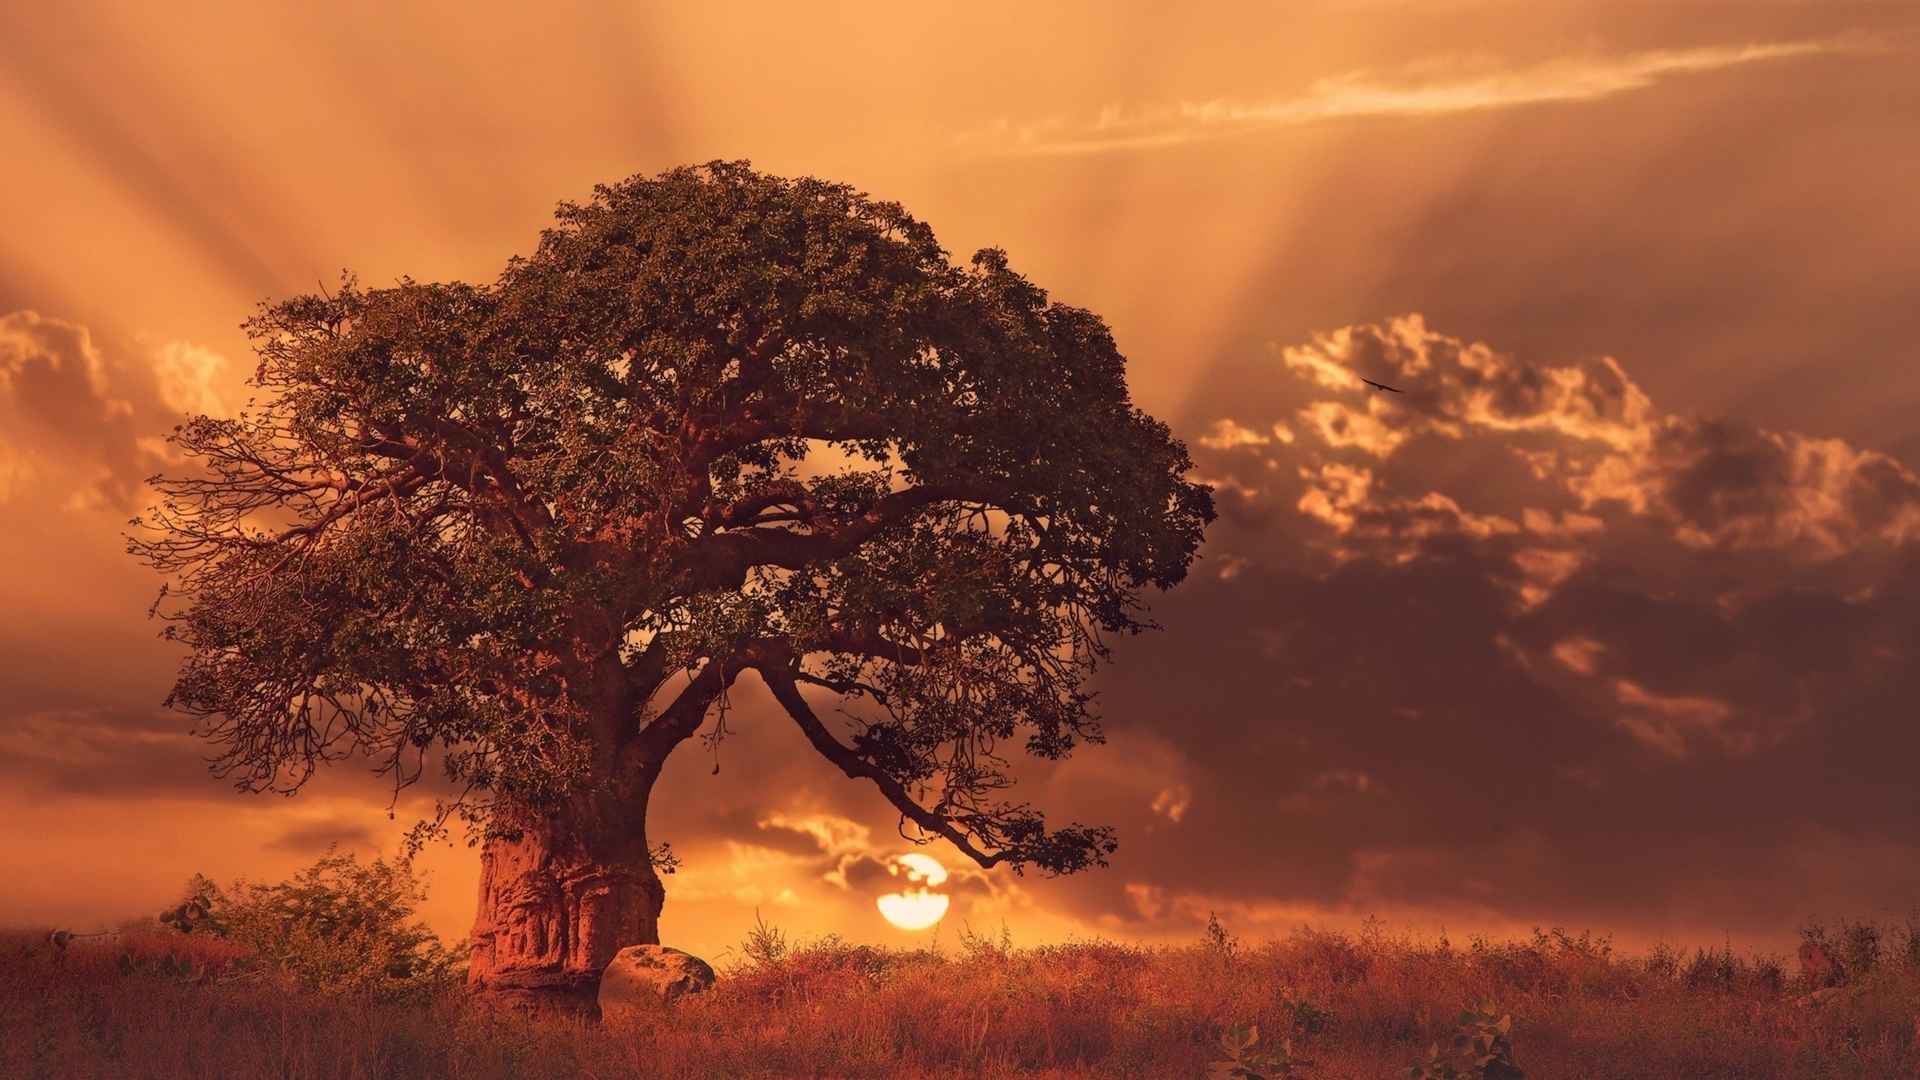 清晨的日出橙光照在大树的风景壁纸-